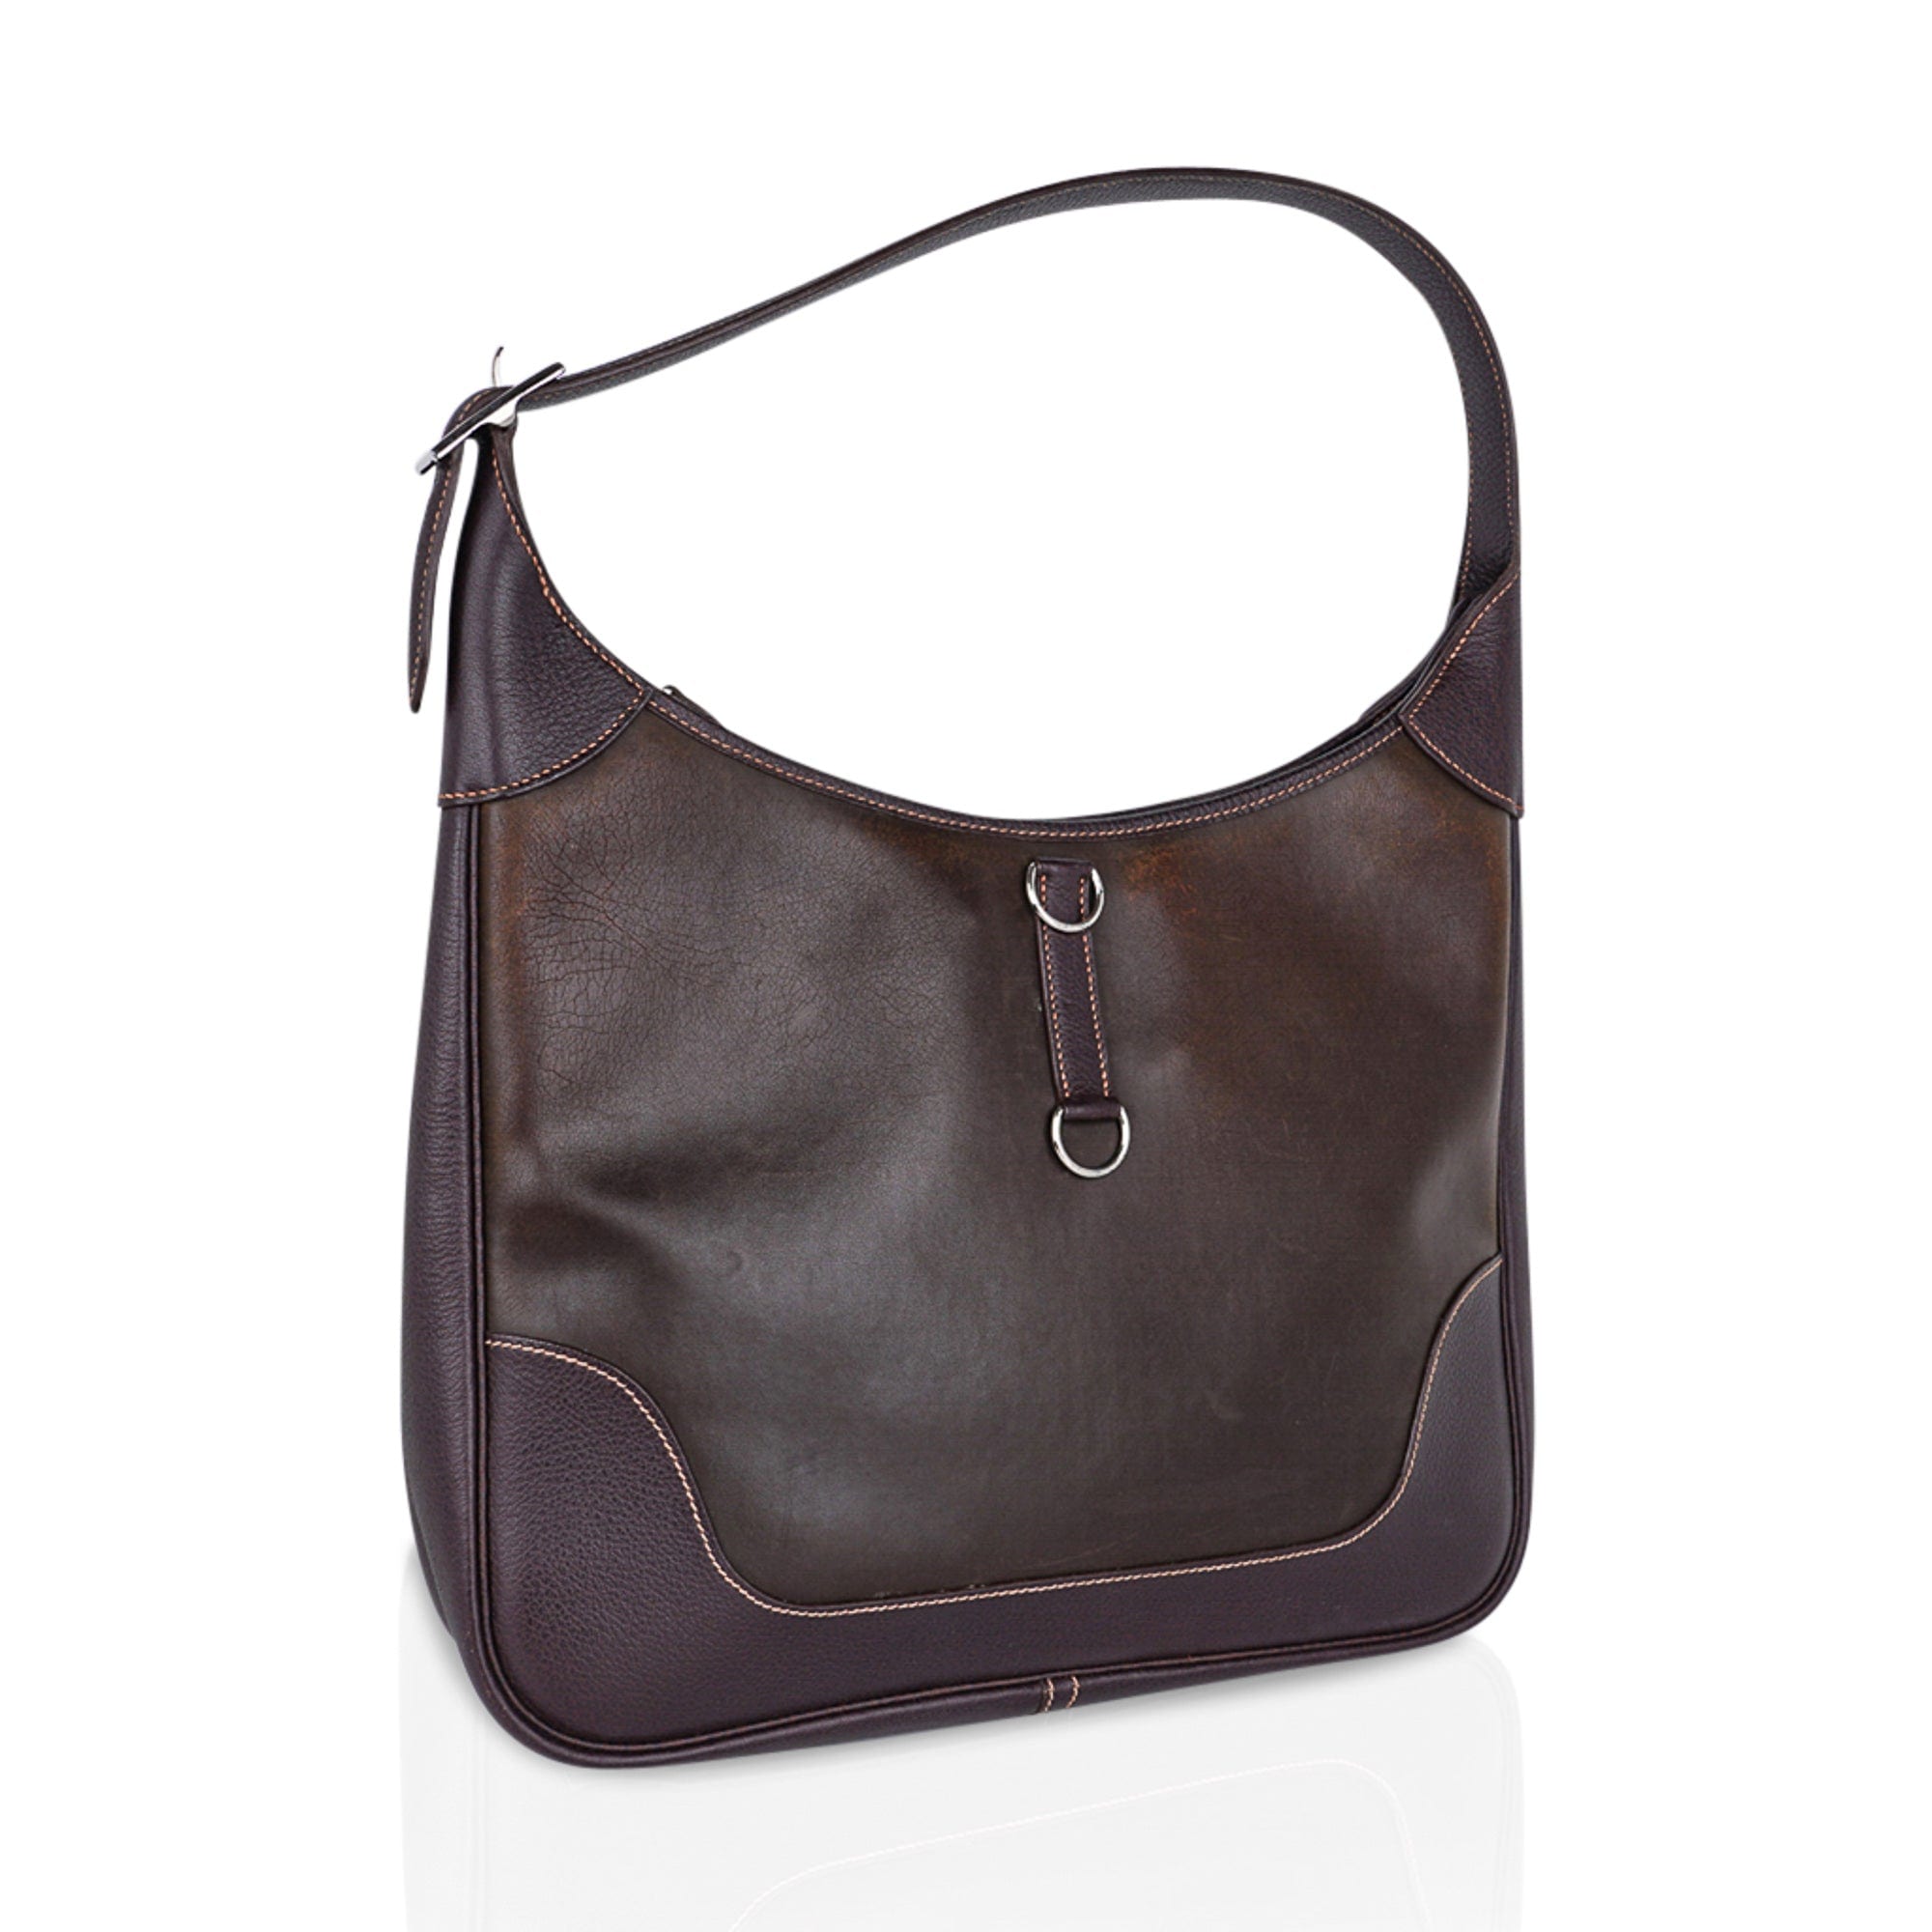 Authentic Prada Bag Black Handbag Cargo Leather RARE!